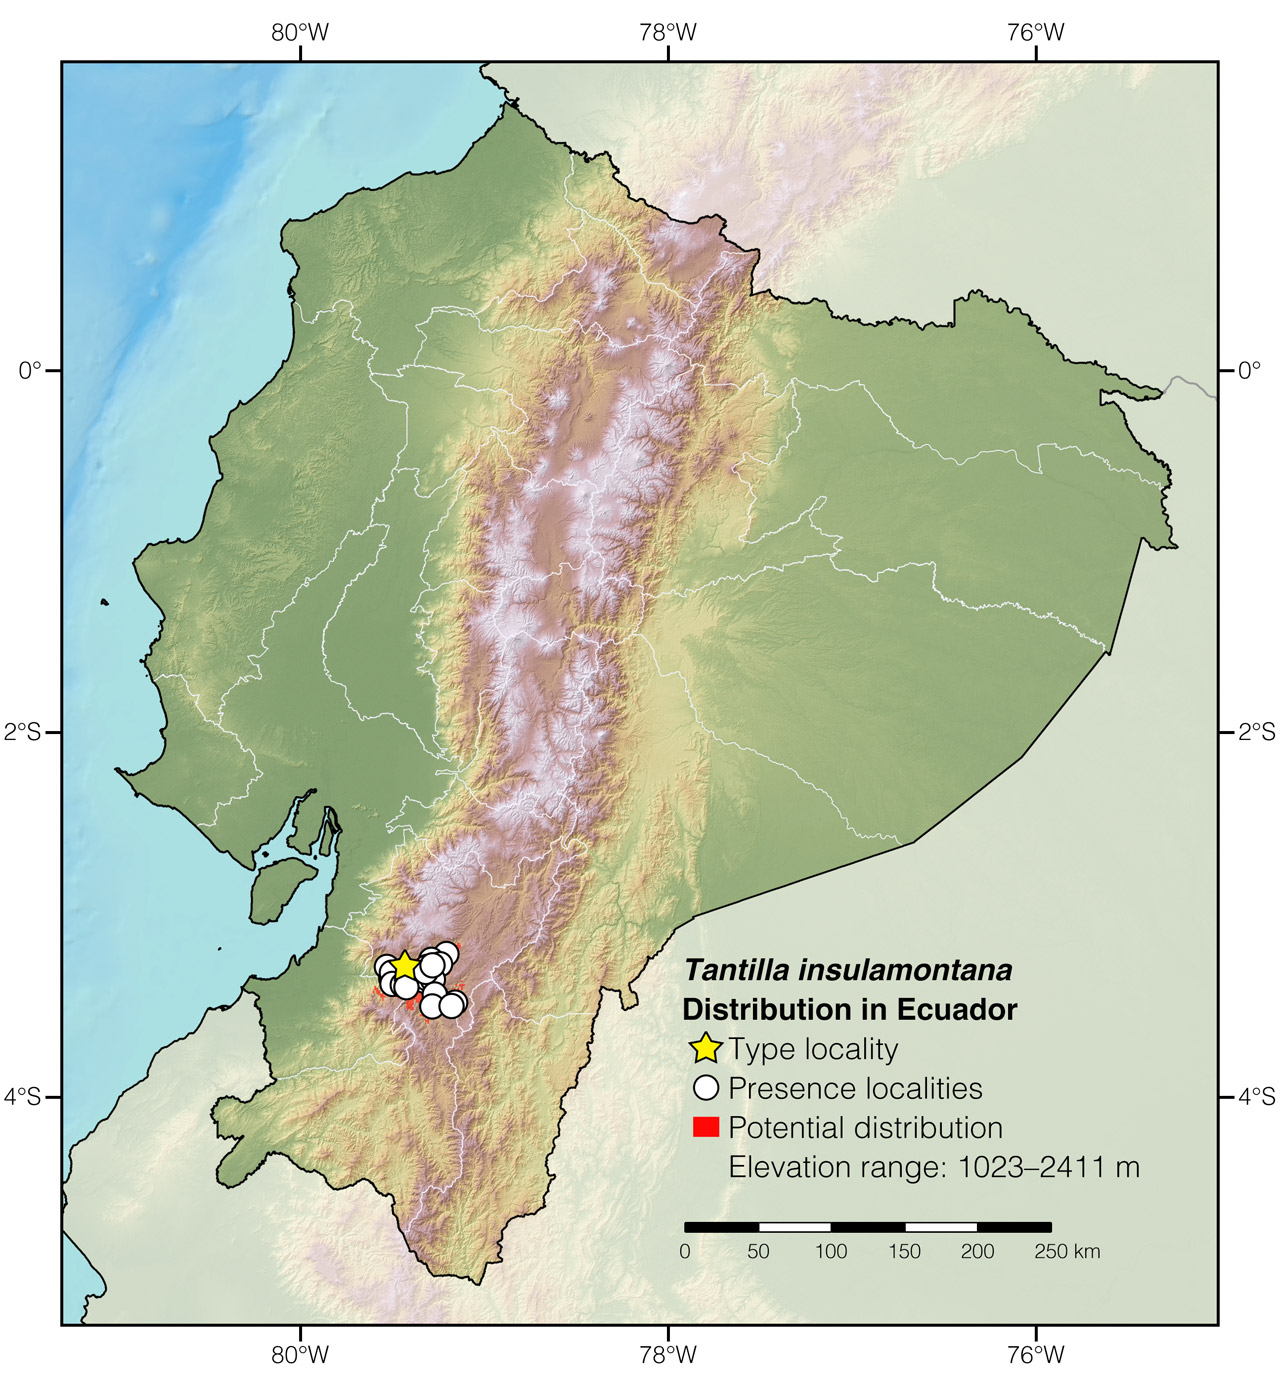 Distribution of Tantilla insulamontana in Ecuador